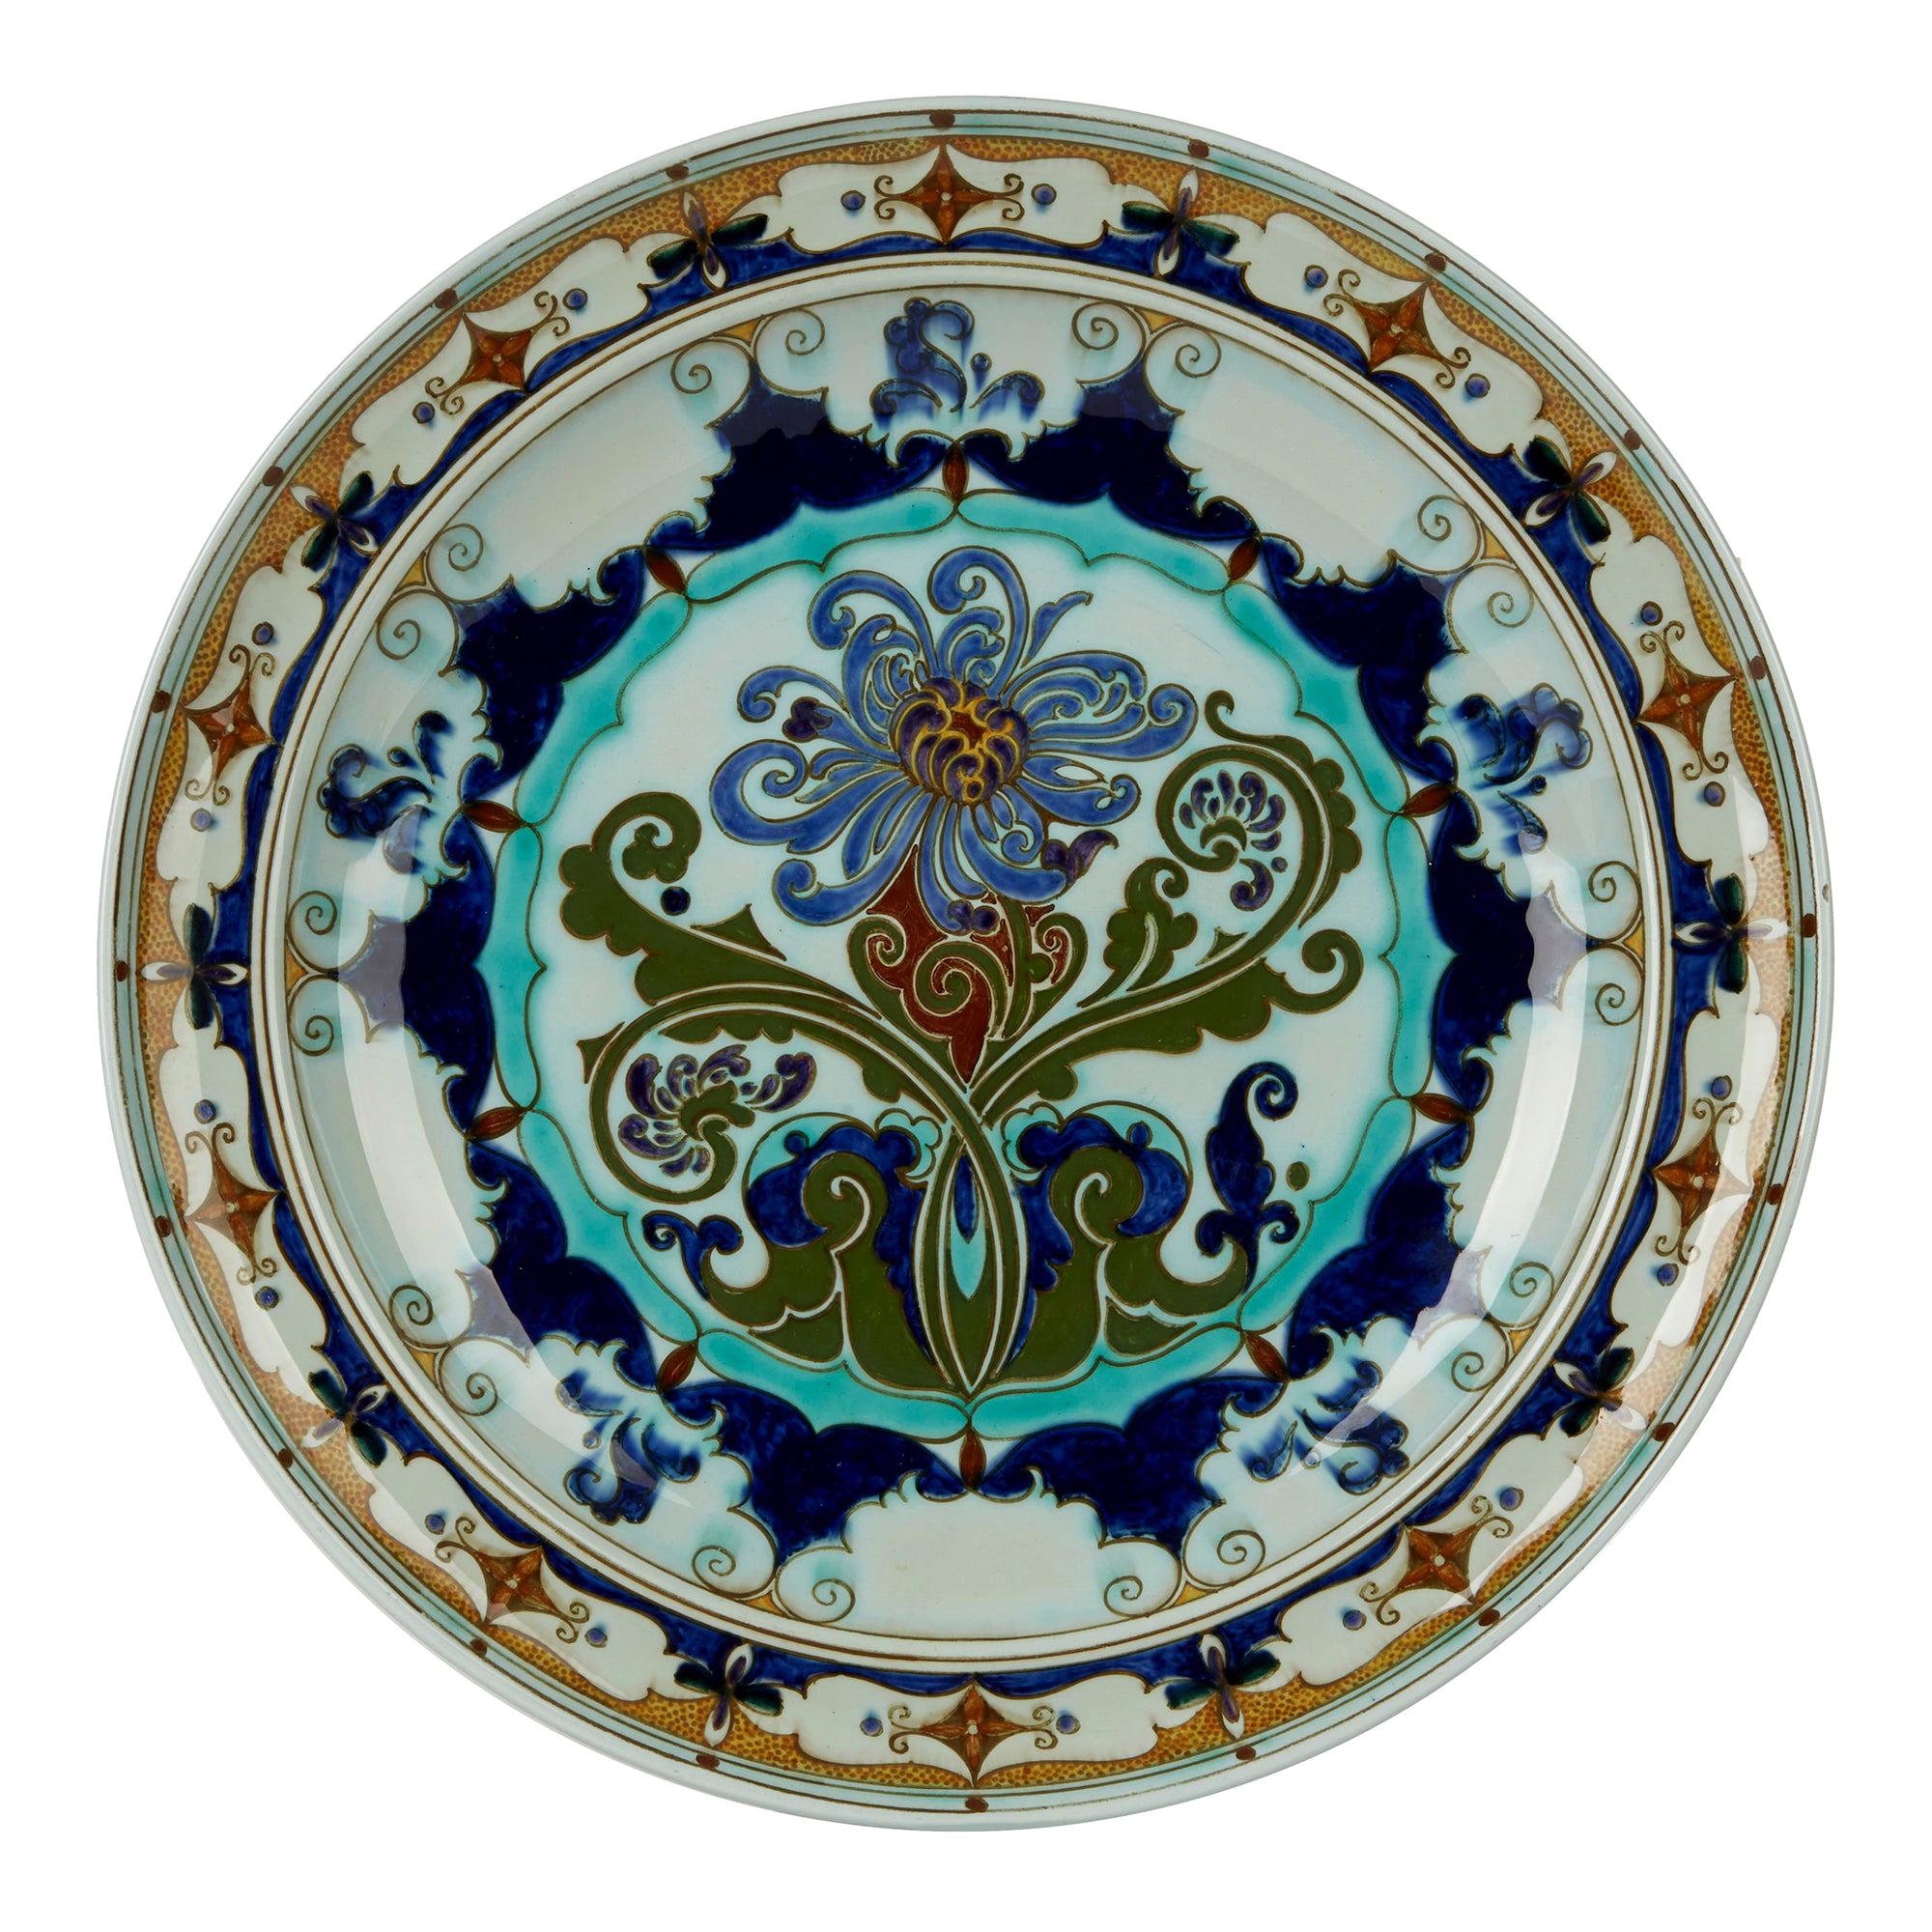 Rozenburg Den Haag Art Nouveau Art Pottery Dish, 1899-1914